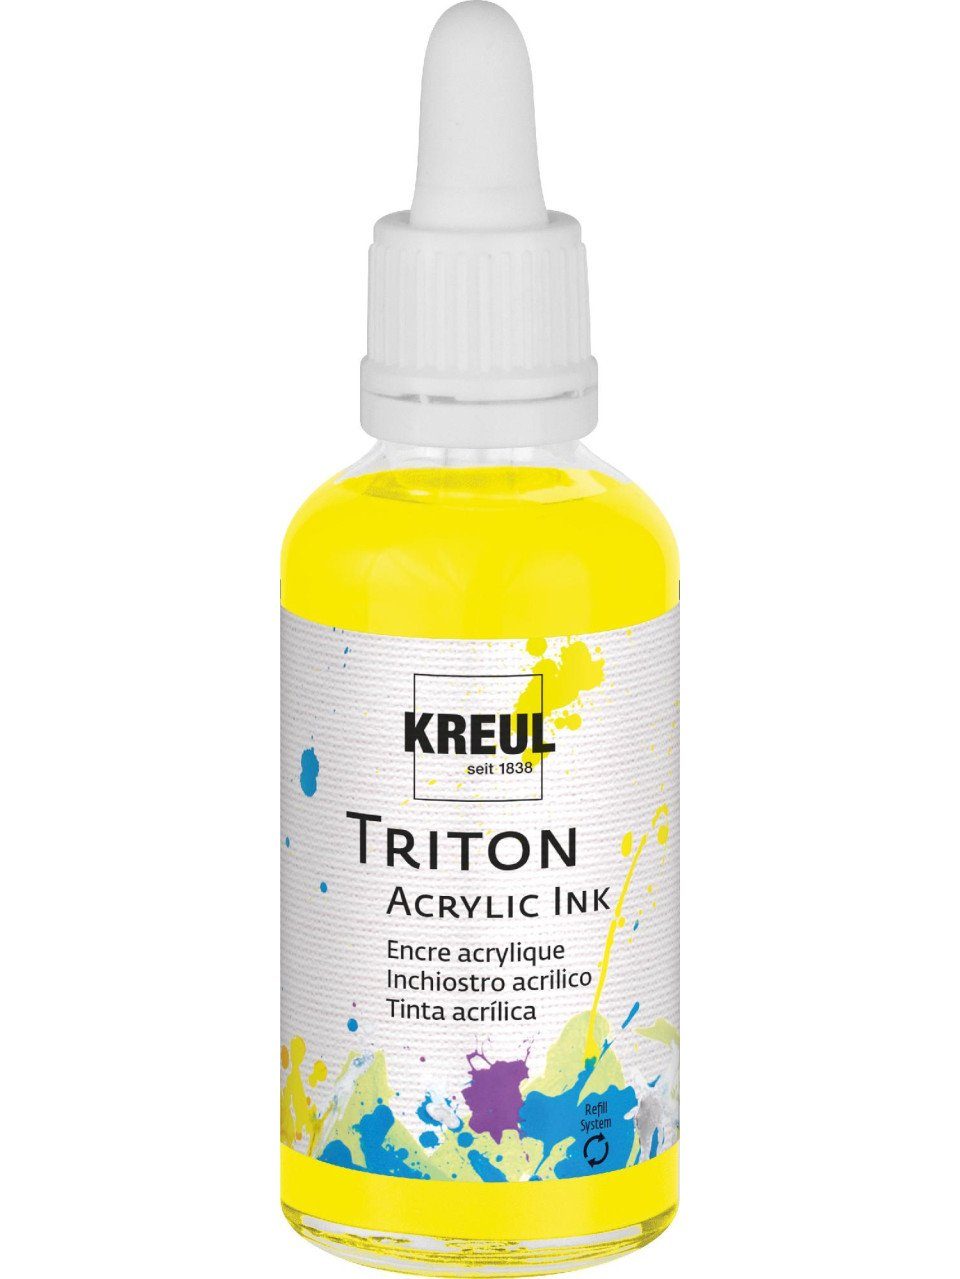 50 ml Ink Künstlerstift gelb Fluoreszierend Acrylic Kreul Triton Kreul